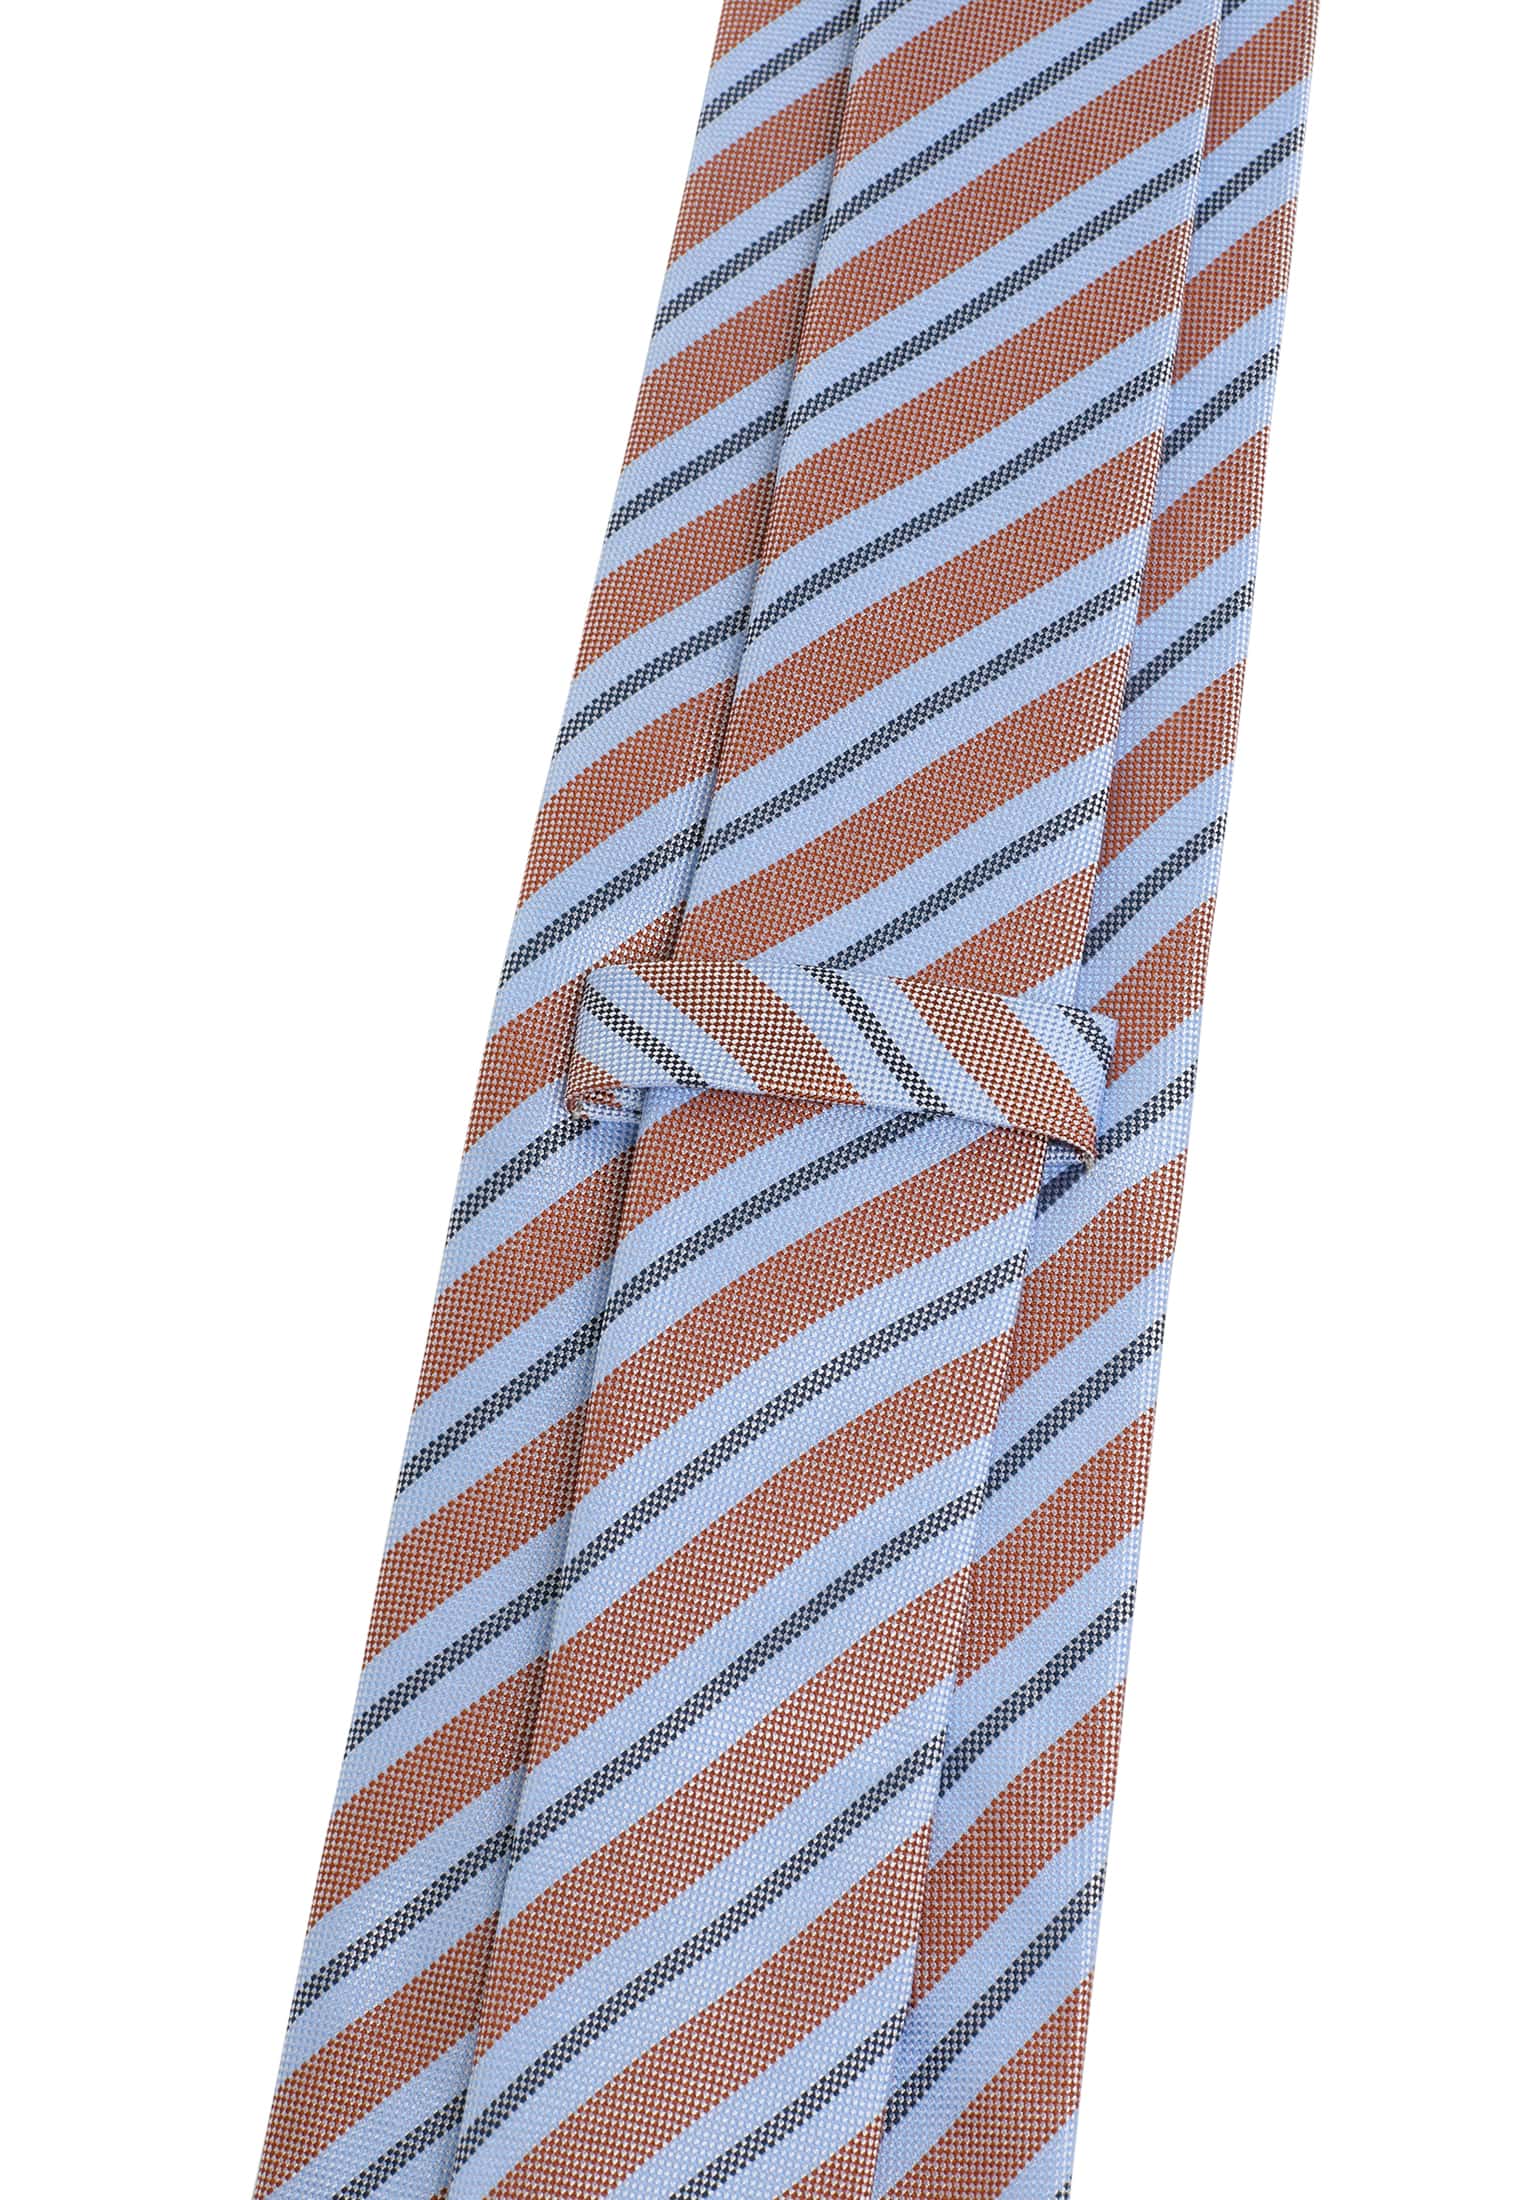 Krawatte in hellblau/orange gemustert | hellblau/orange | 142 |  1AC02006-81-33-142